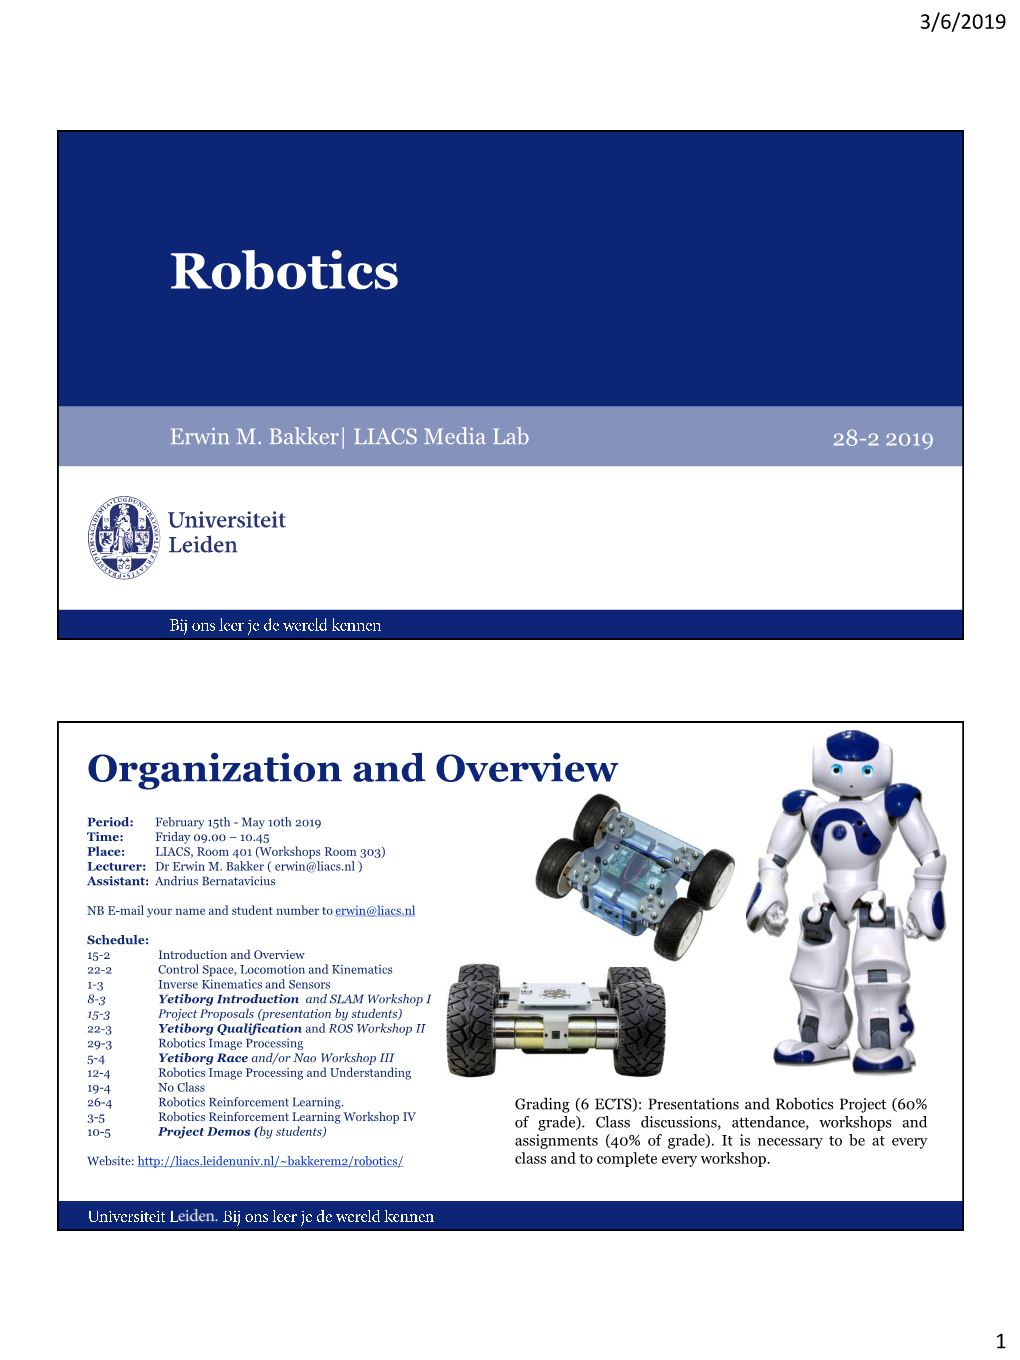 Robotics Lecture 01